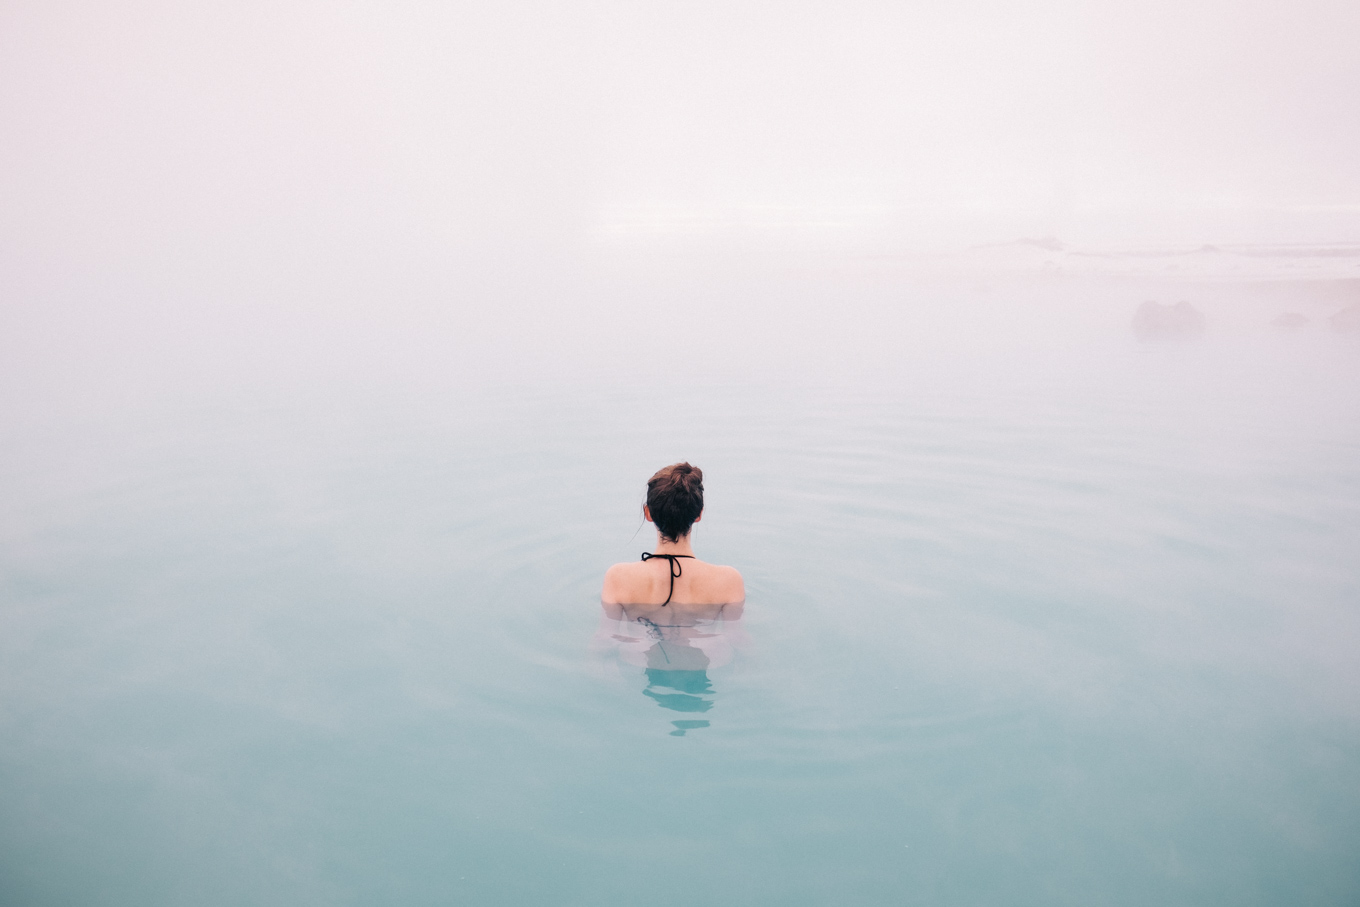 Myvatn nature baths in Iceland